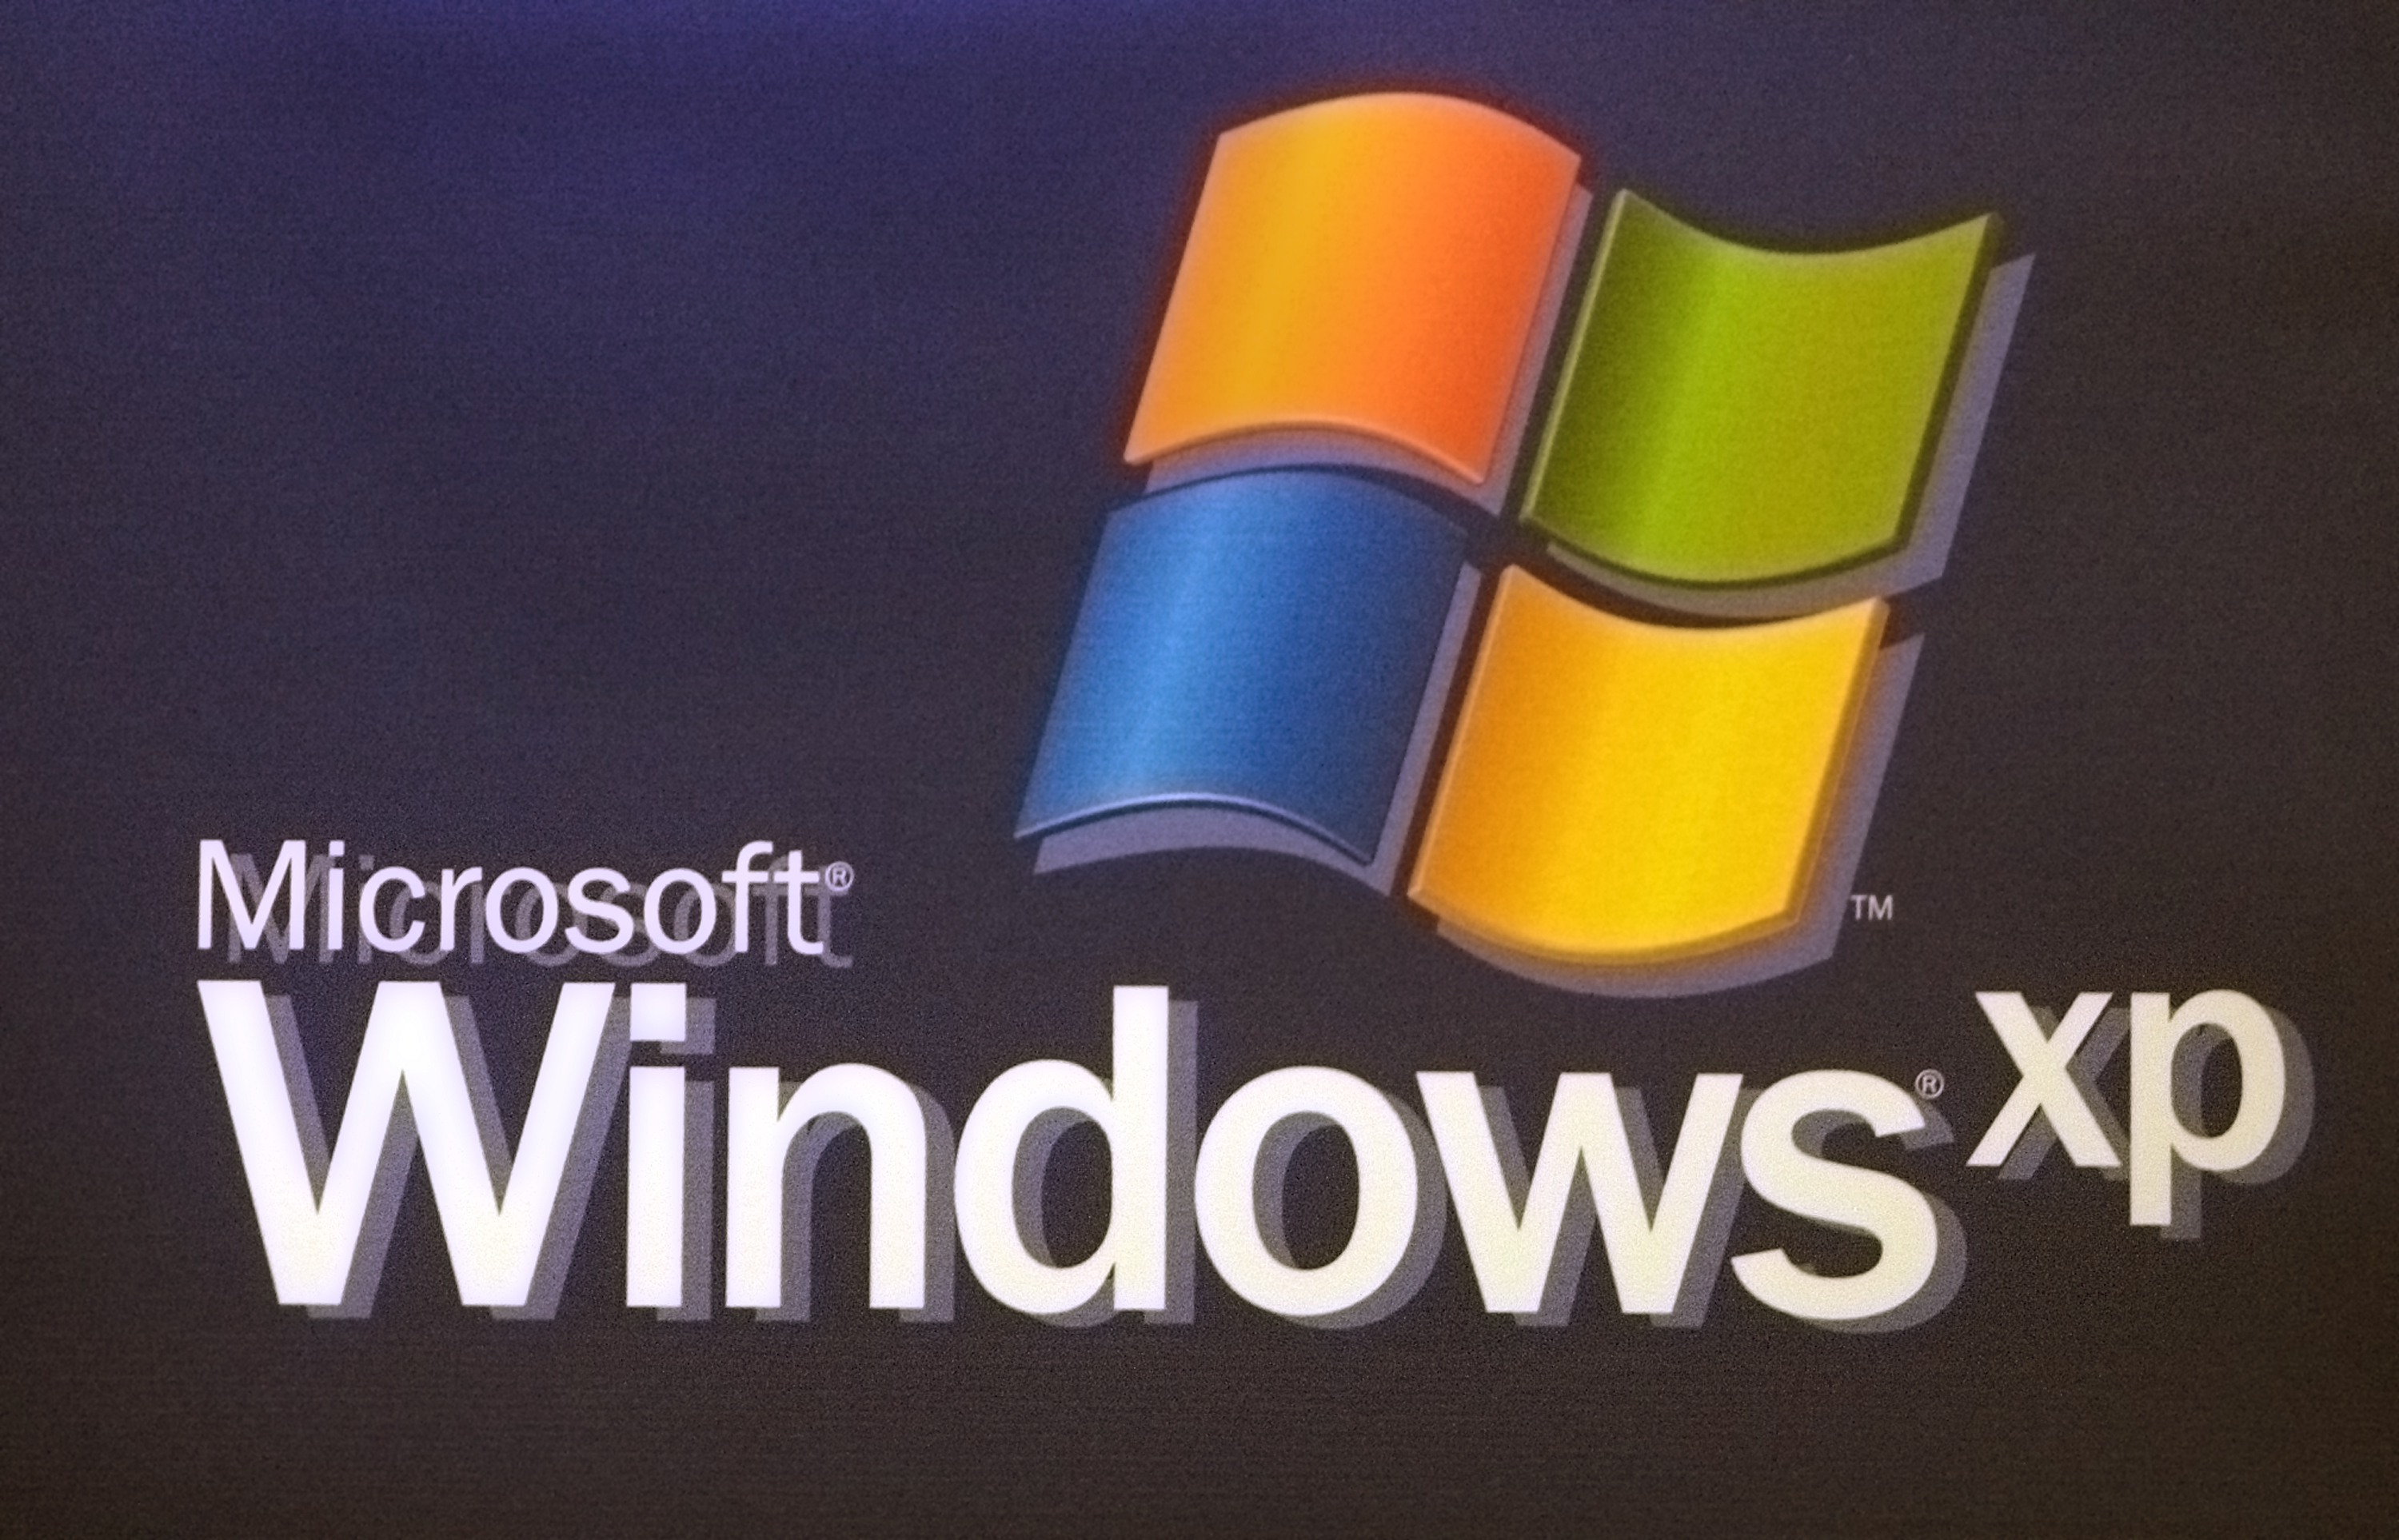 Майкрософт делает телефоны. Виндовс XP. Логотип Microsoft Windows XP. Операционная система виндовс. Операционная система Windows XP.